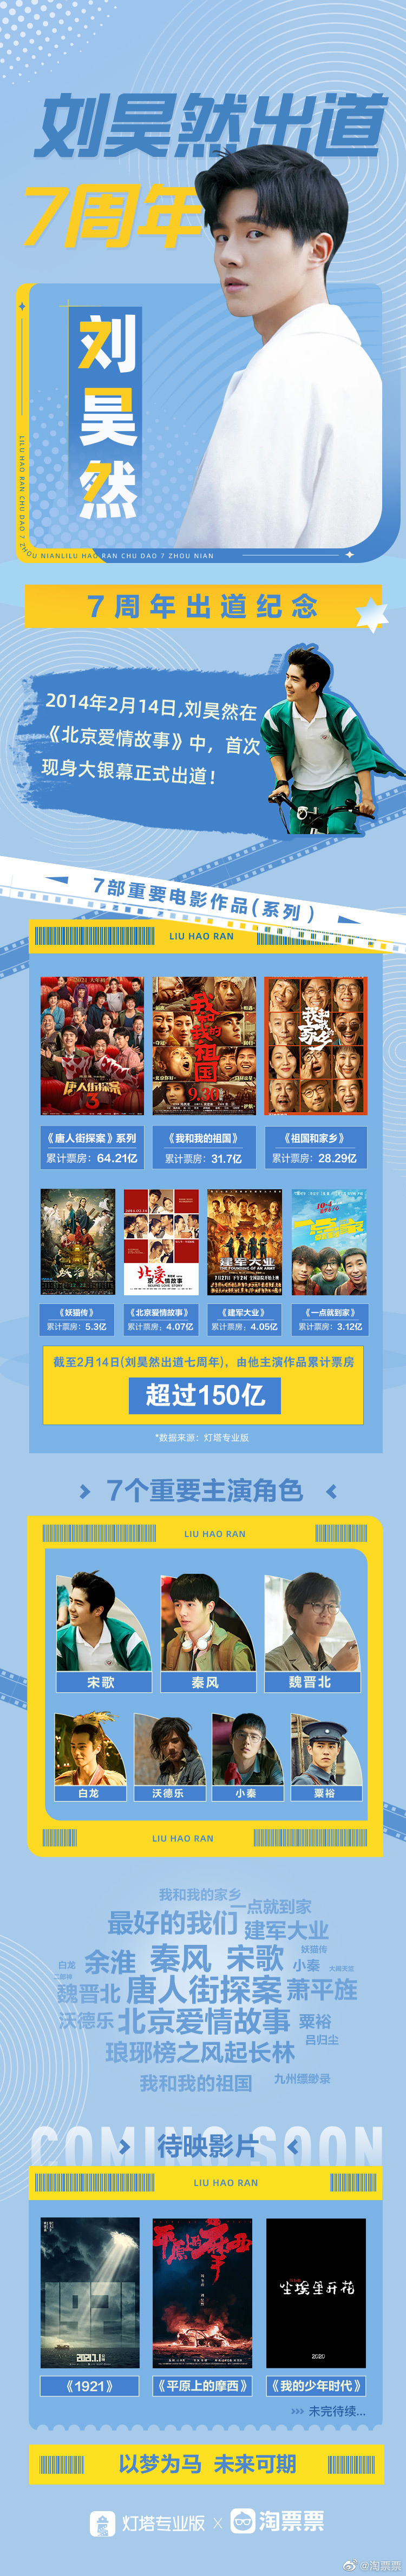 刘昊然主演电影票房超150亿 成第五位超150亿男演员